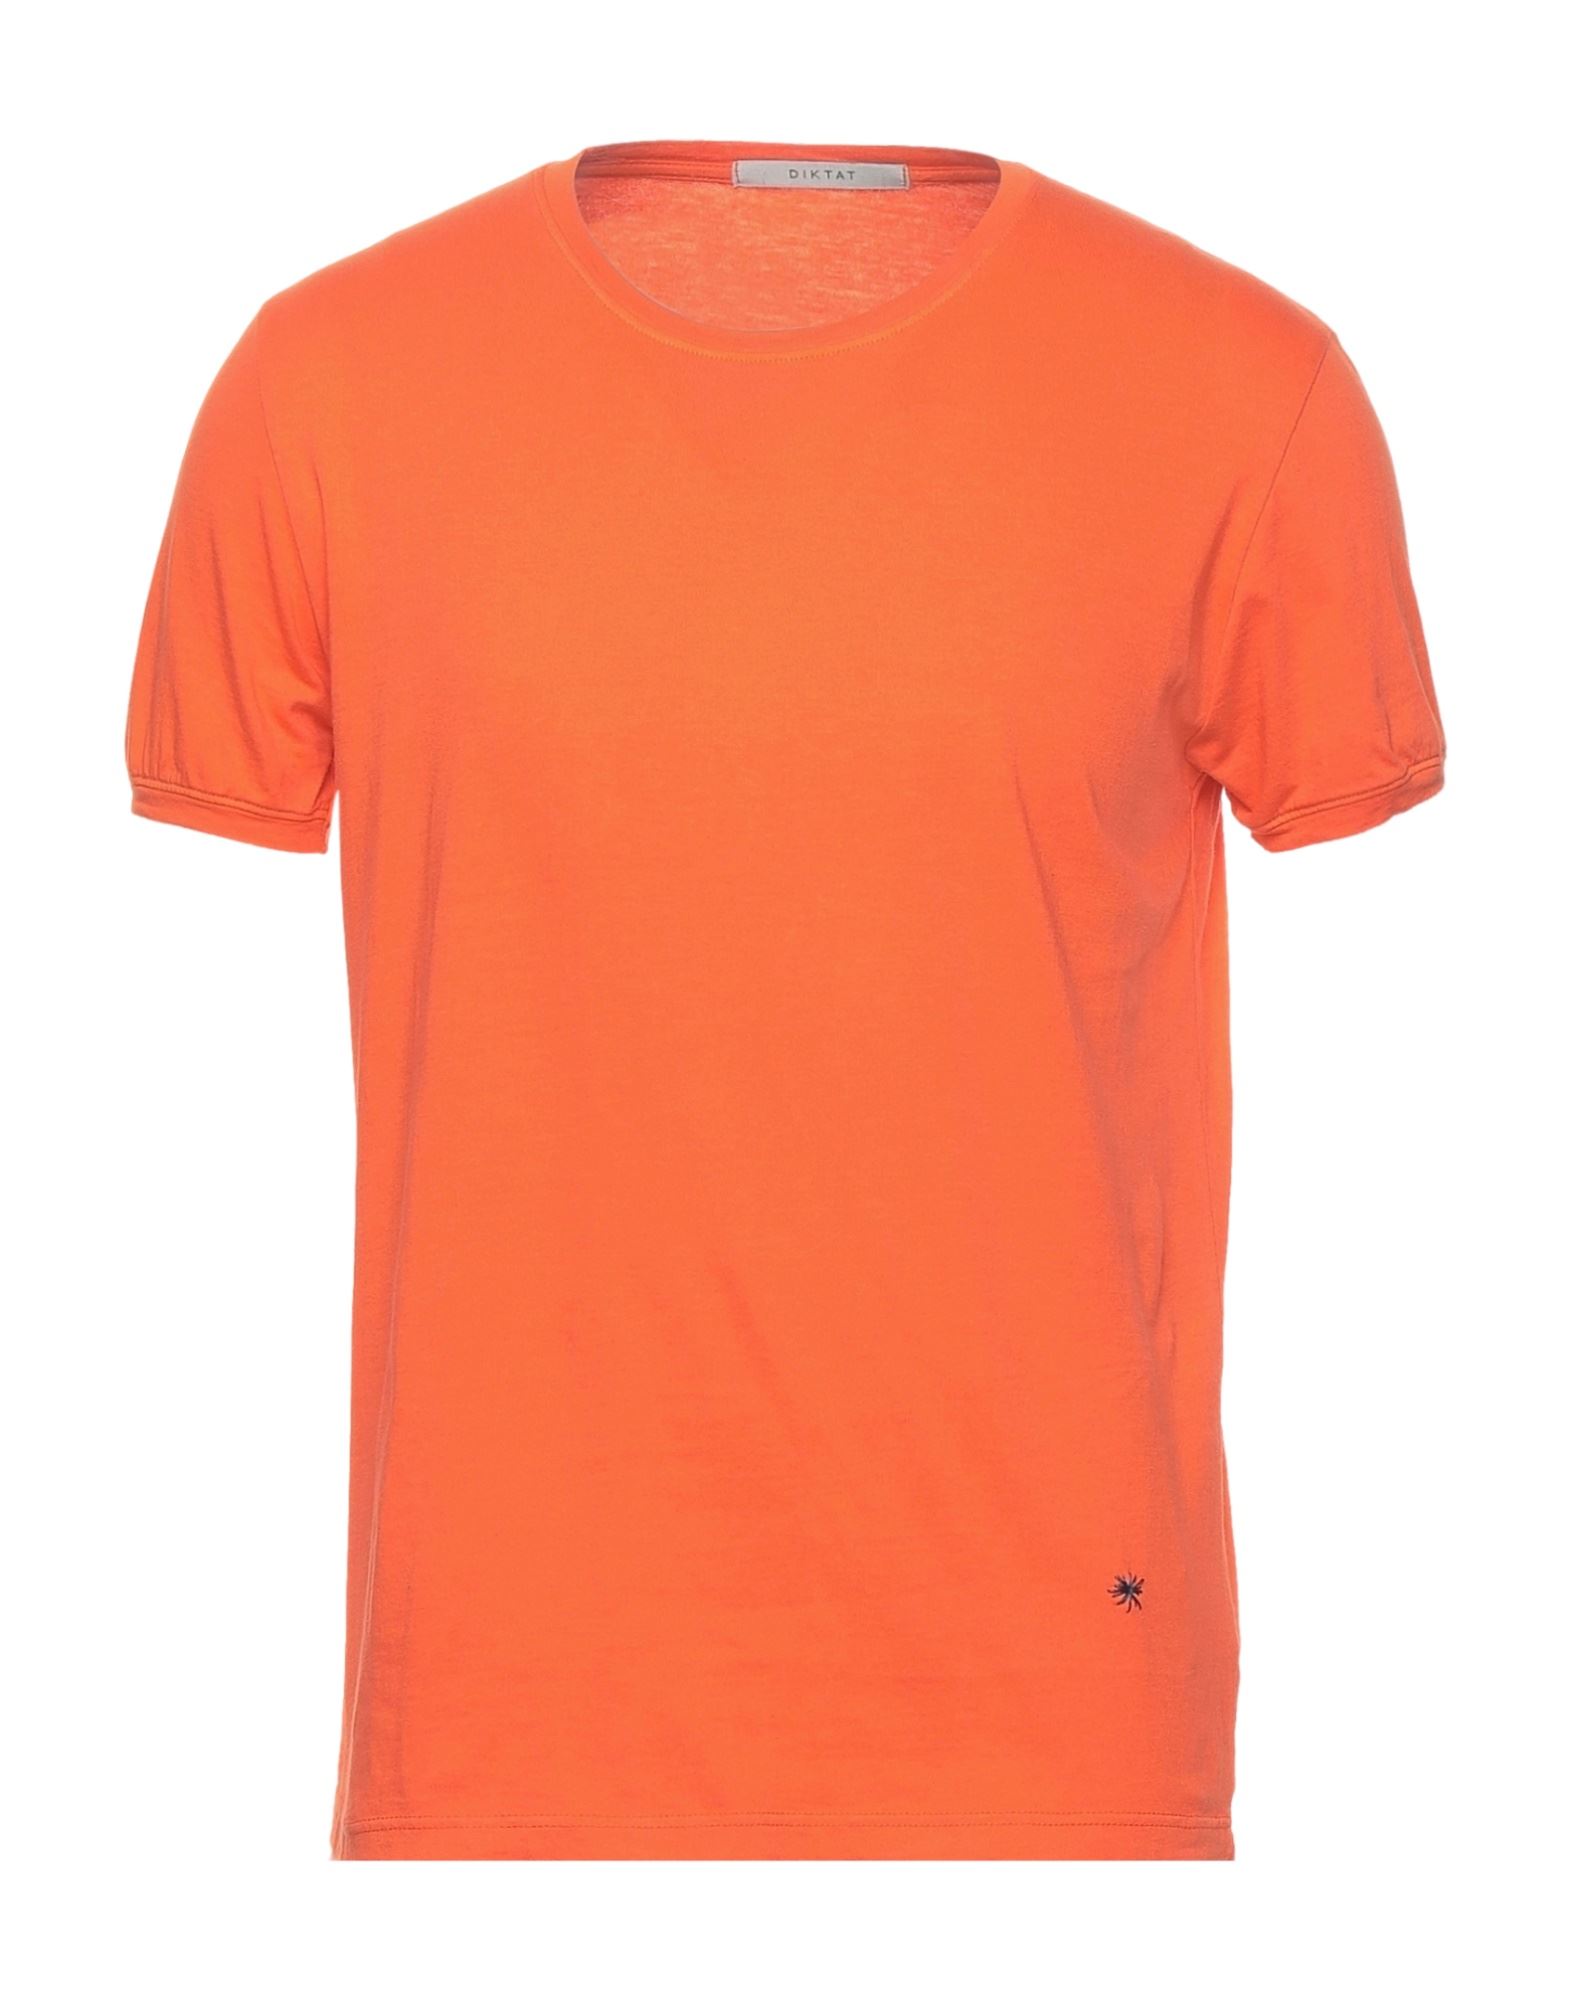 DIKTAT T-shirts Herren Orange von DIKTAT